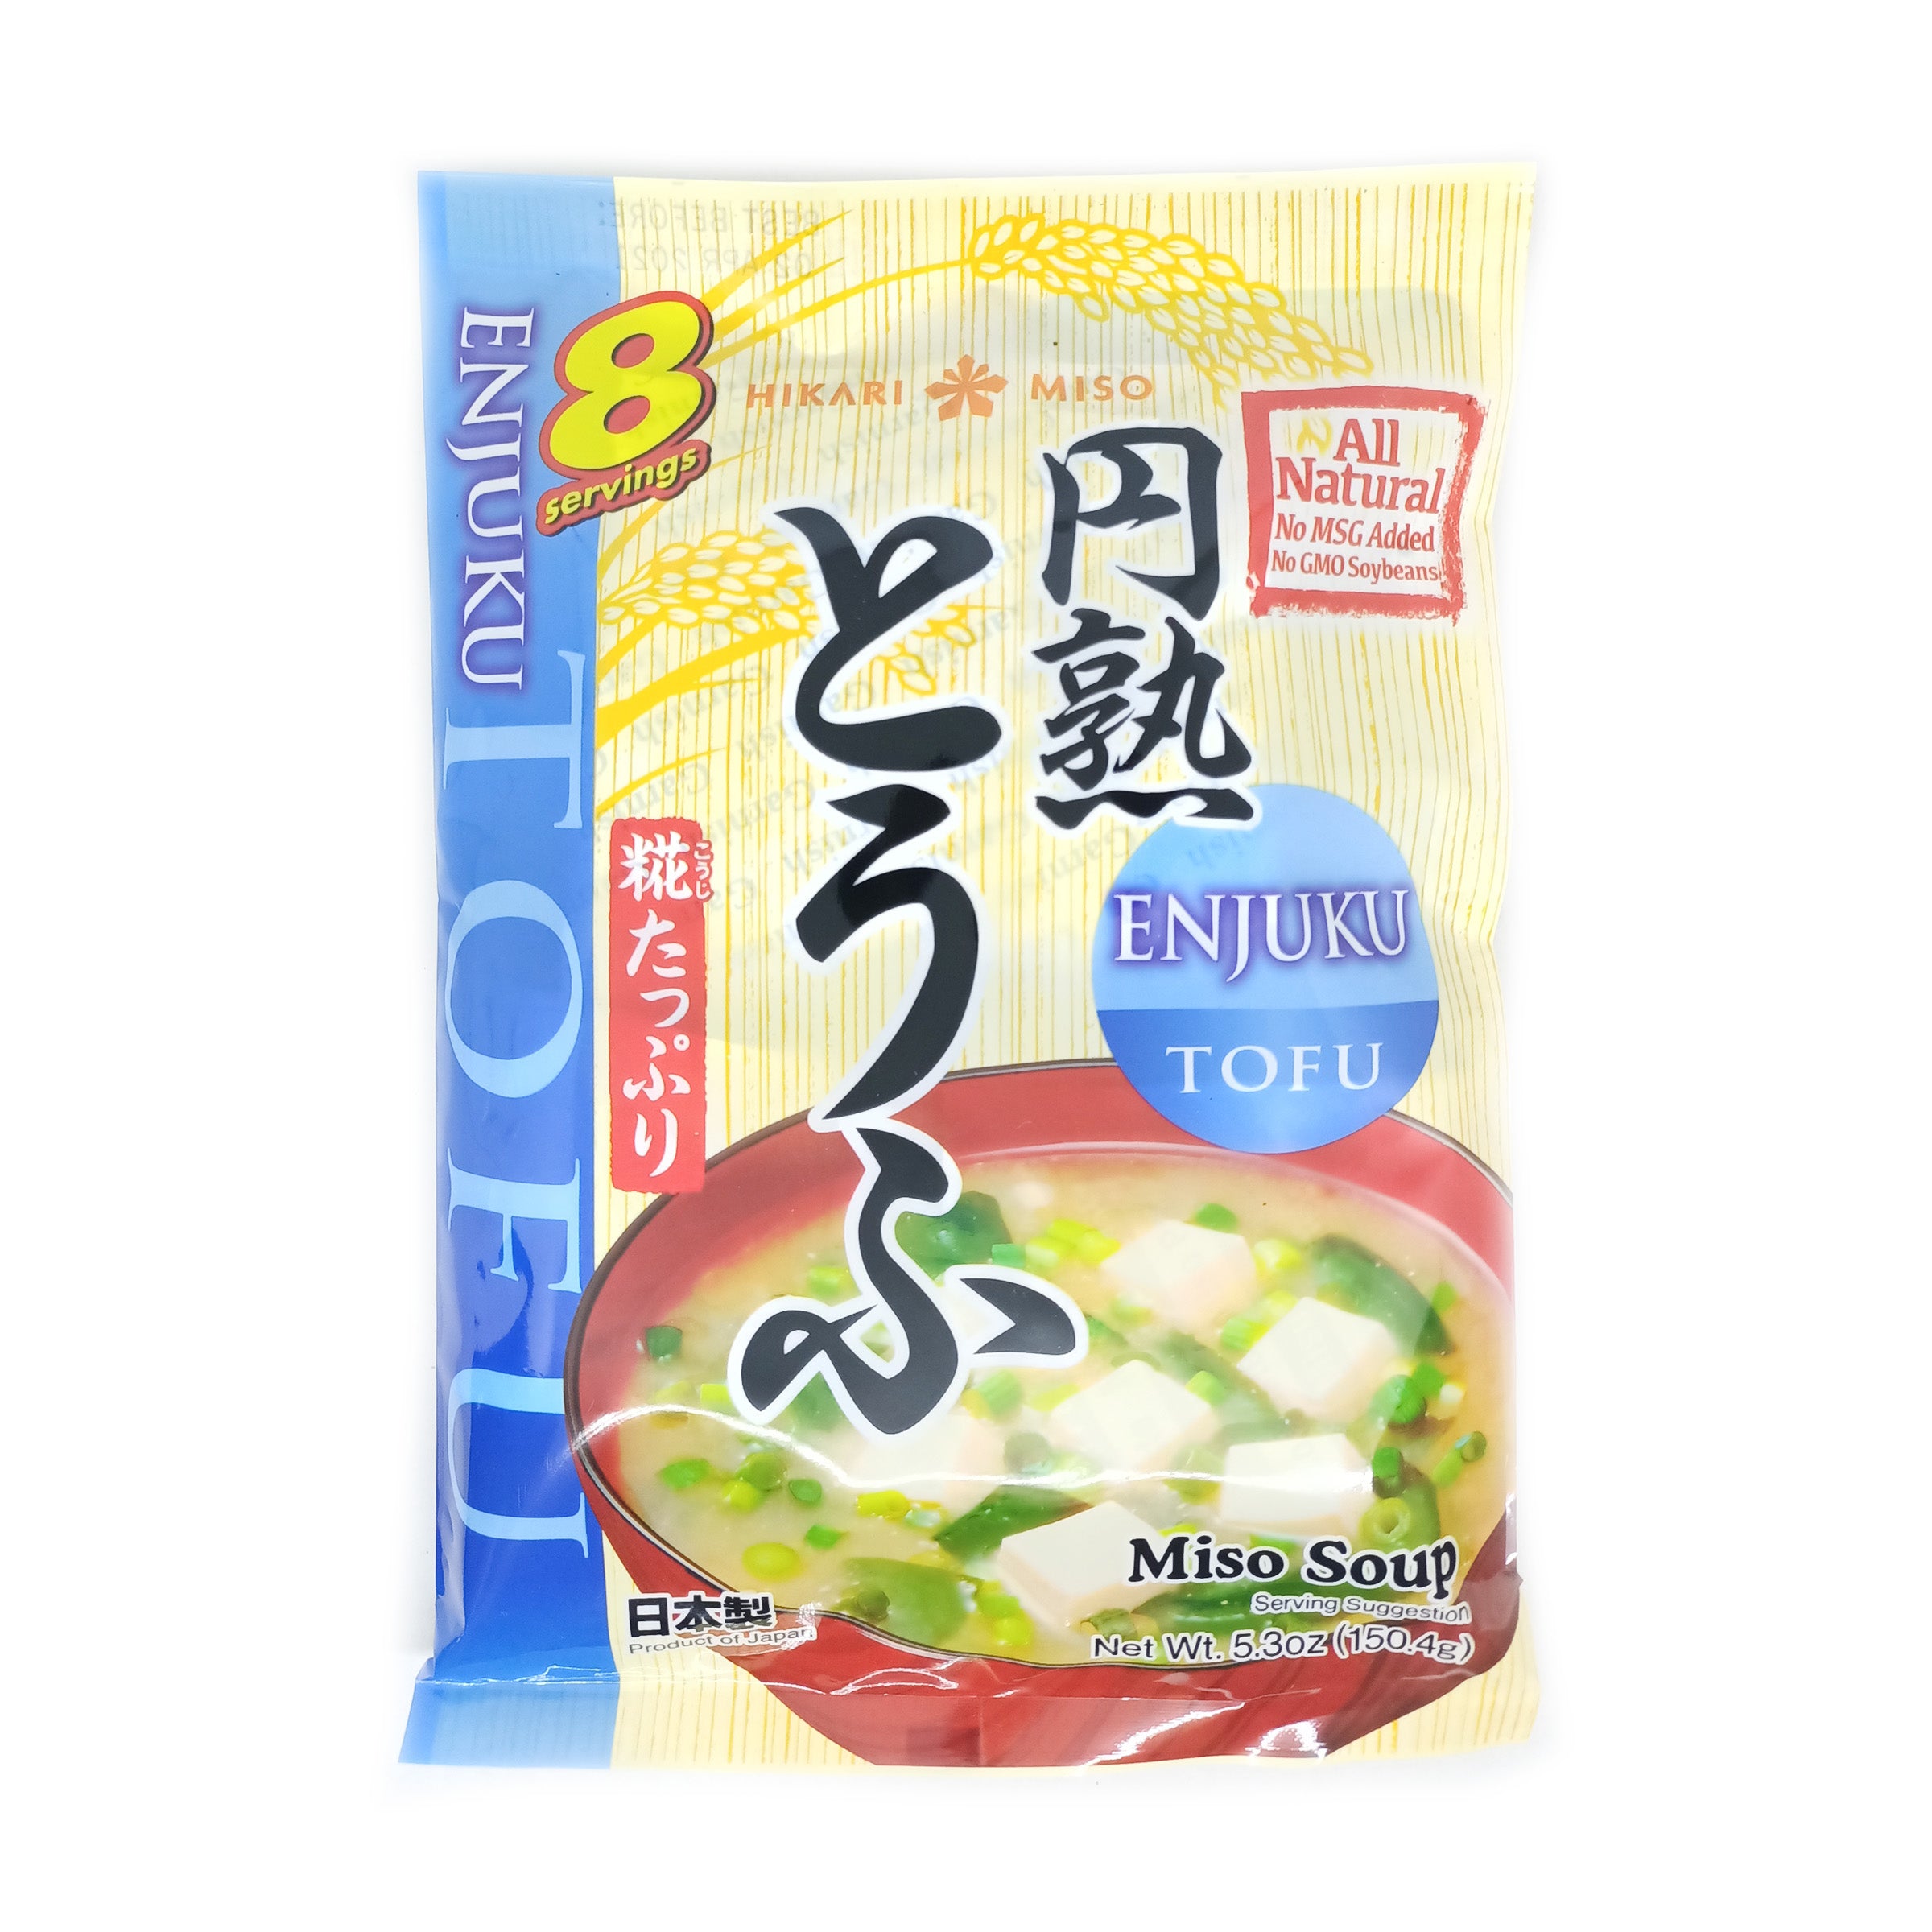 Instant Miso Soup Enjyuku Tofu 8 Servings by Hikari Miso